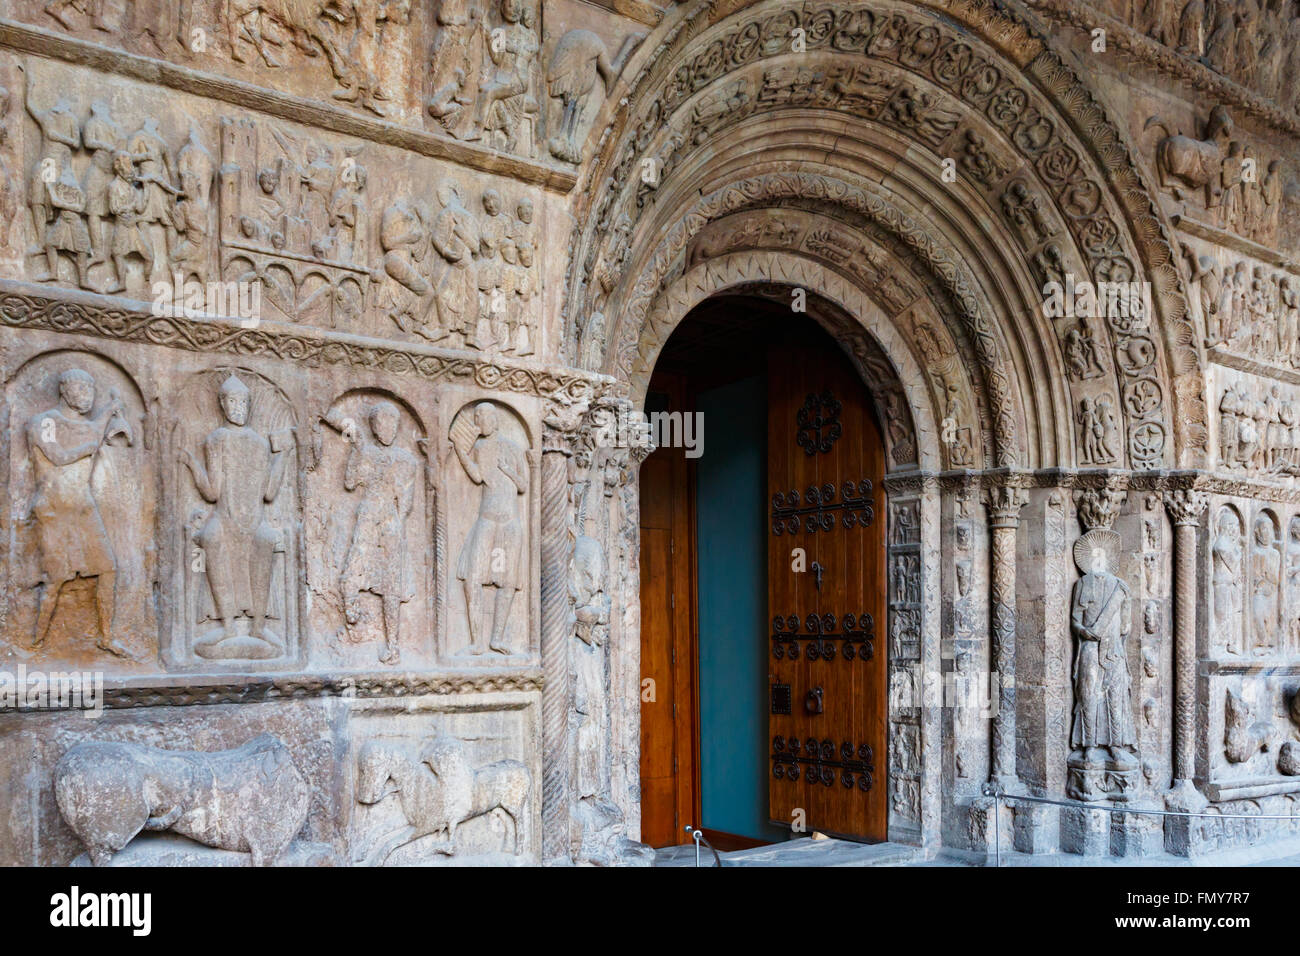 Ripoll, province de Gérone, Catalogne, Espagne. Monastir, ou monastère, de Santa Maria. Le portail roman. Bible en pierre. Banque D'Images